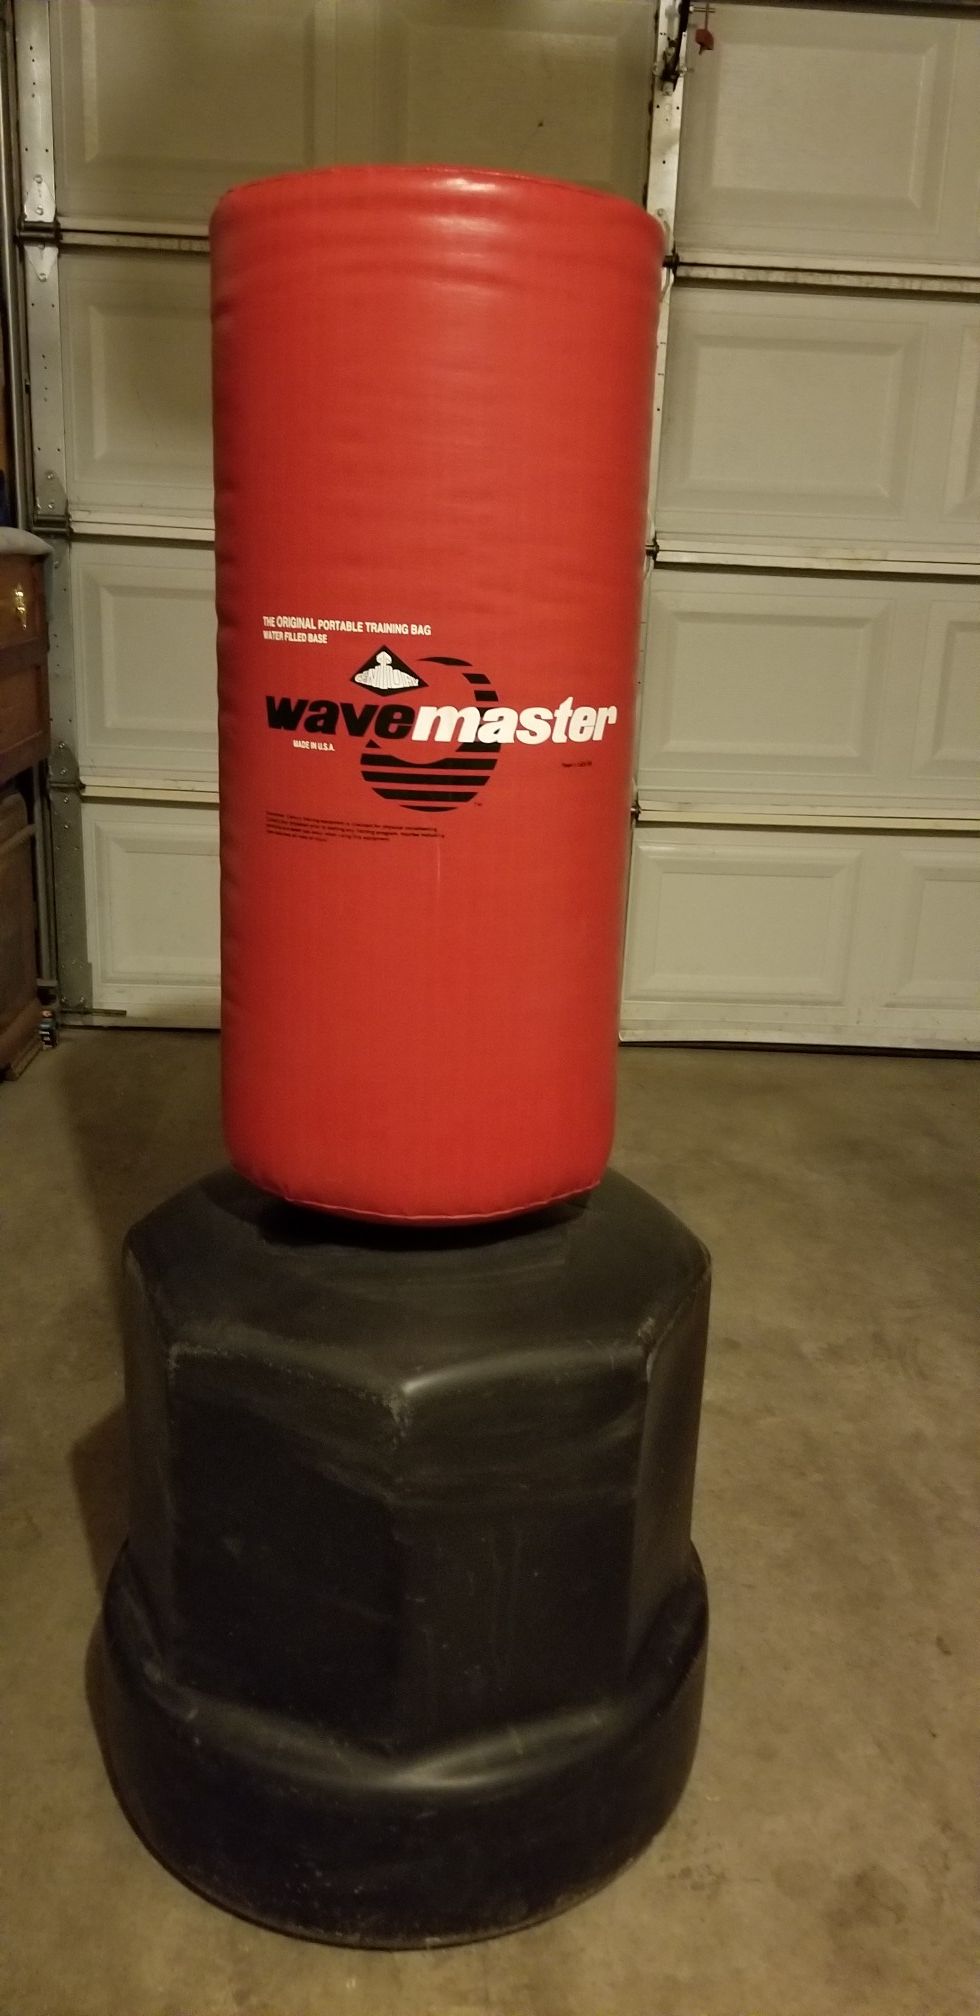 Wave Master punching bag